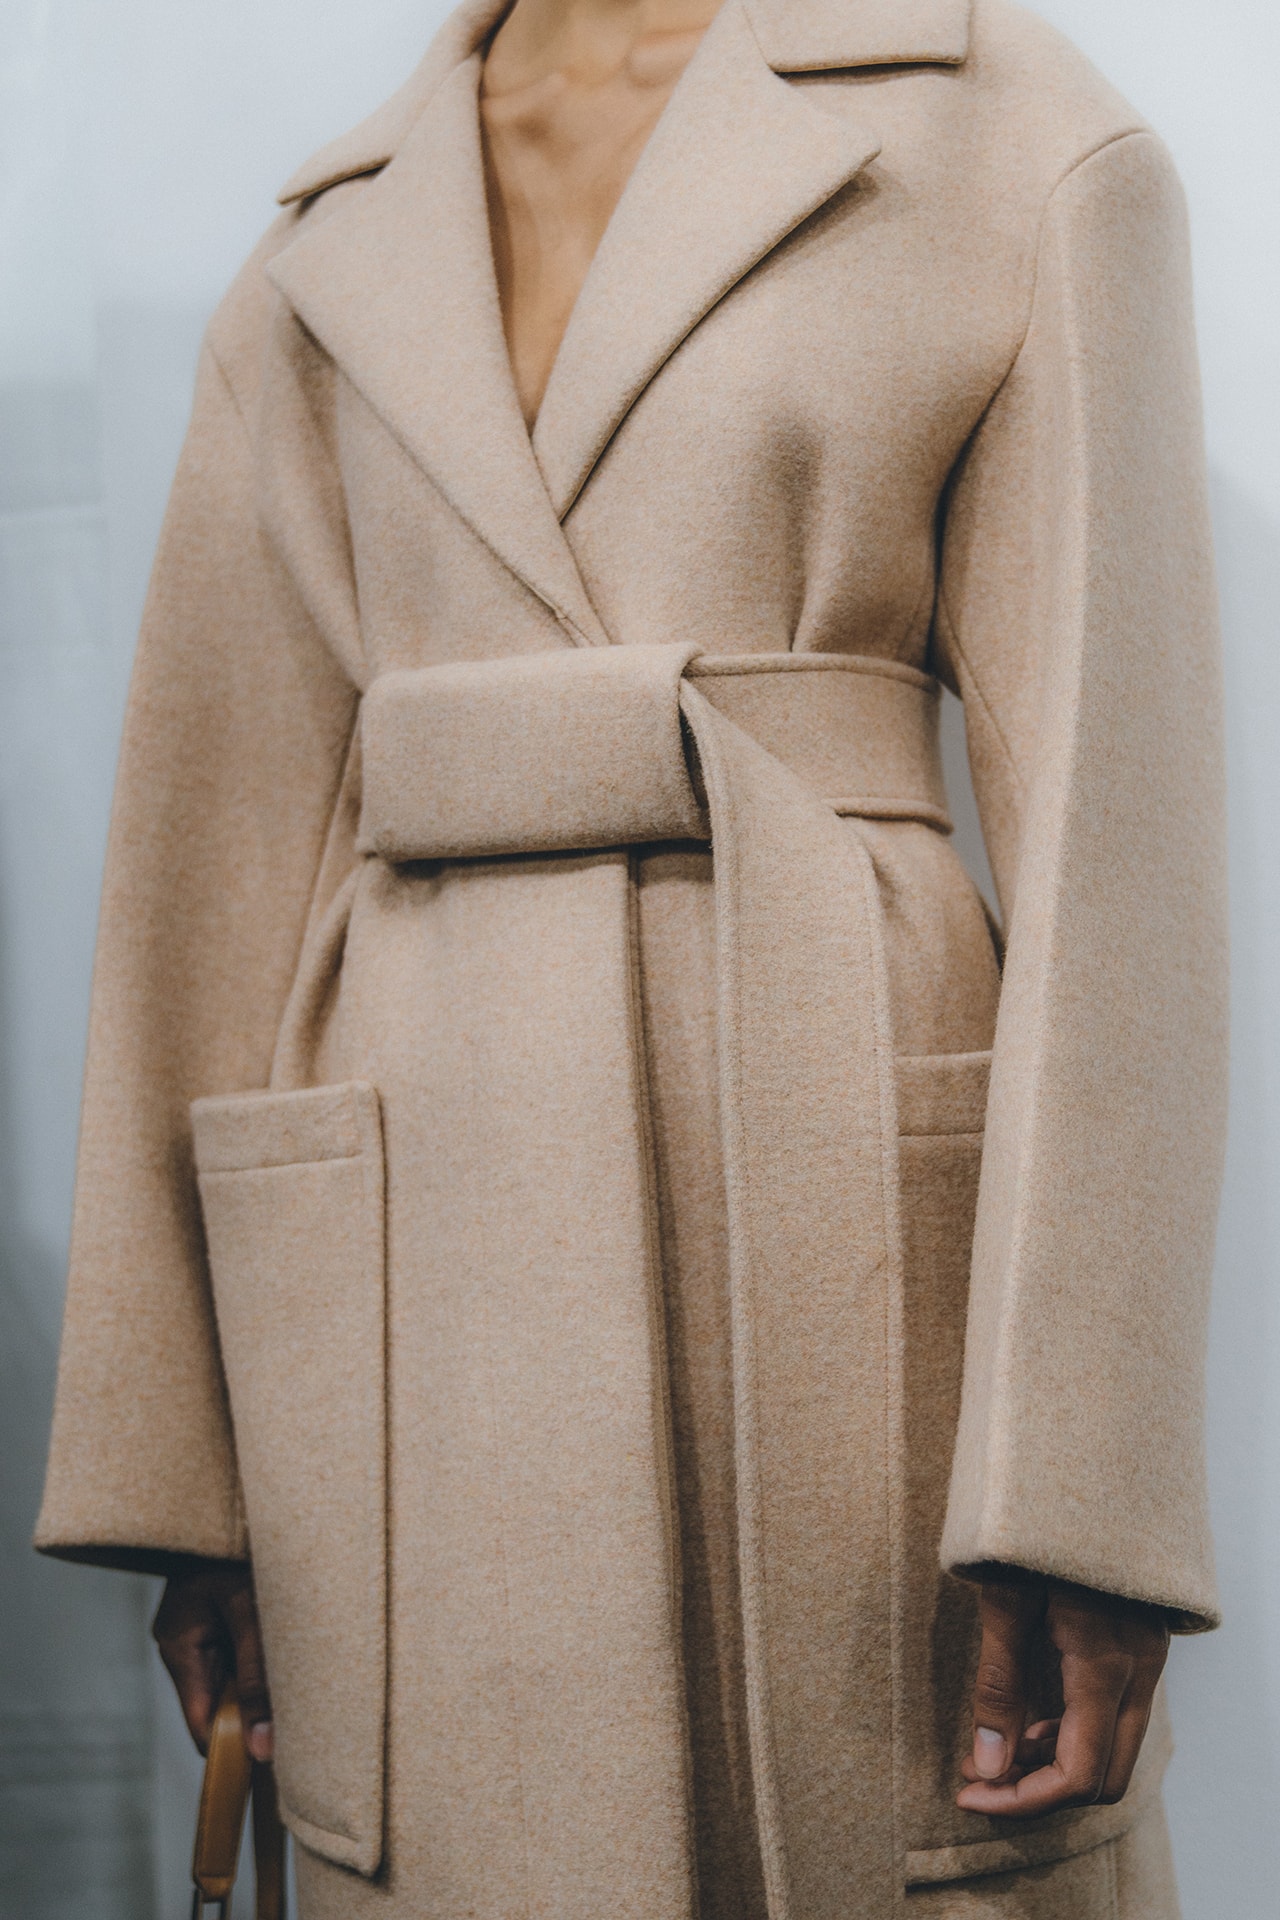 Jil Sander Fall Winter 2019 Runway Show Backstage Milan Fashion Week beige coat wrap camel